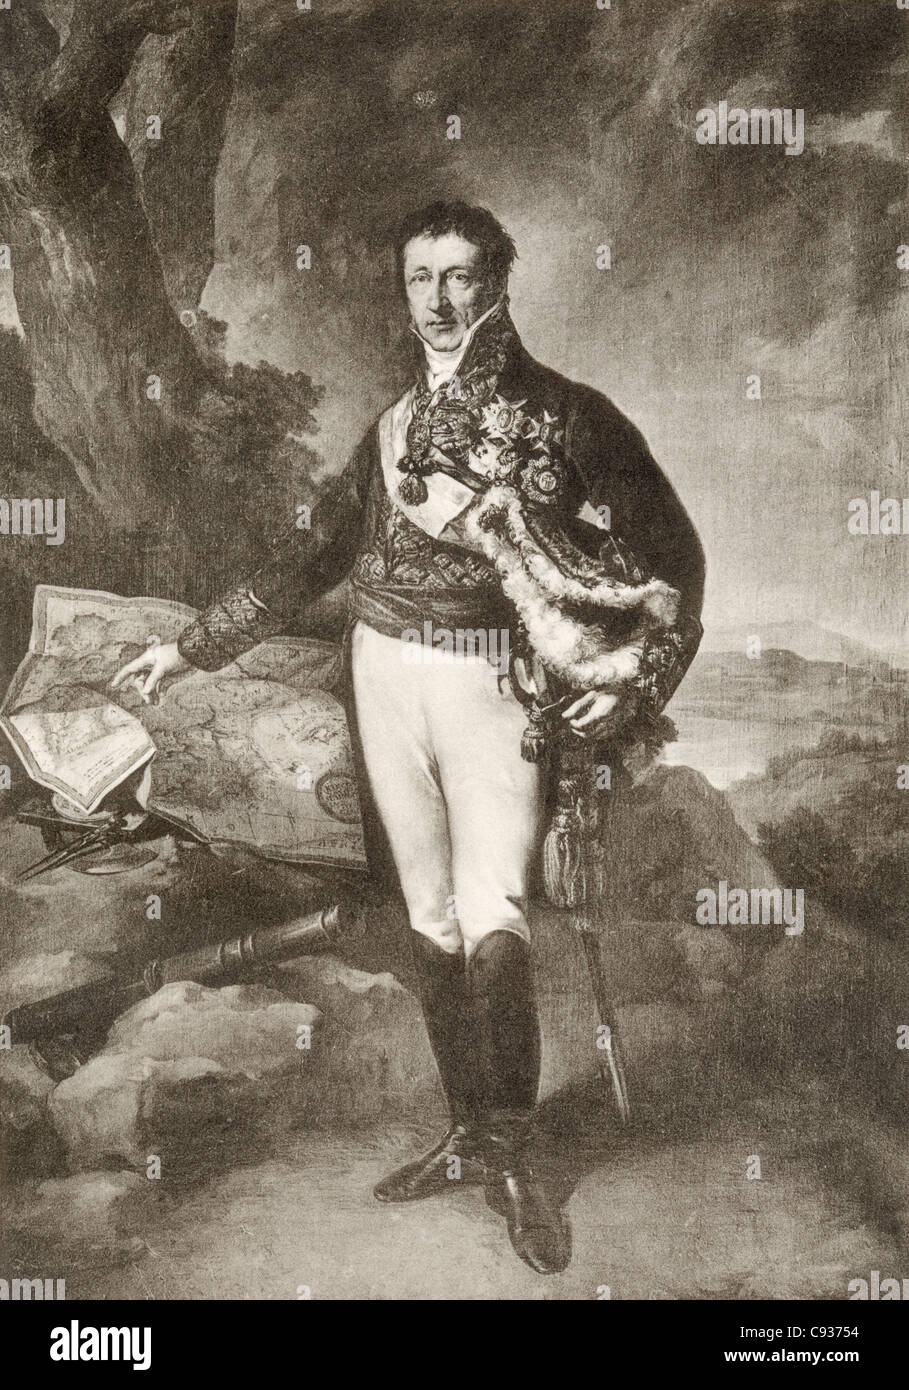 Pedro de Alcántara Álvarez de Toledo y Salm-Salm, XIII duque del Infantado, 1768-1841. Spanish soldier and politician. Stock Photo